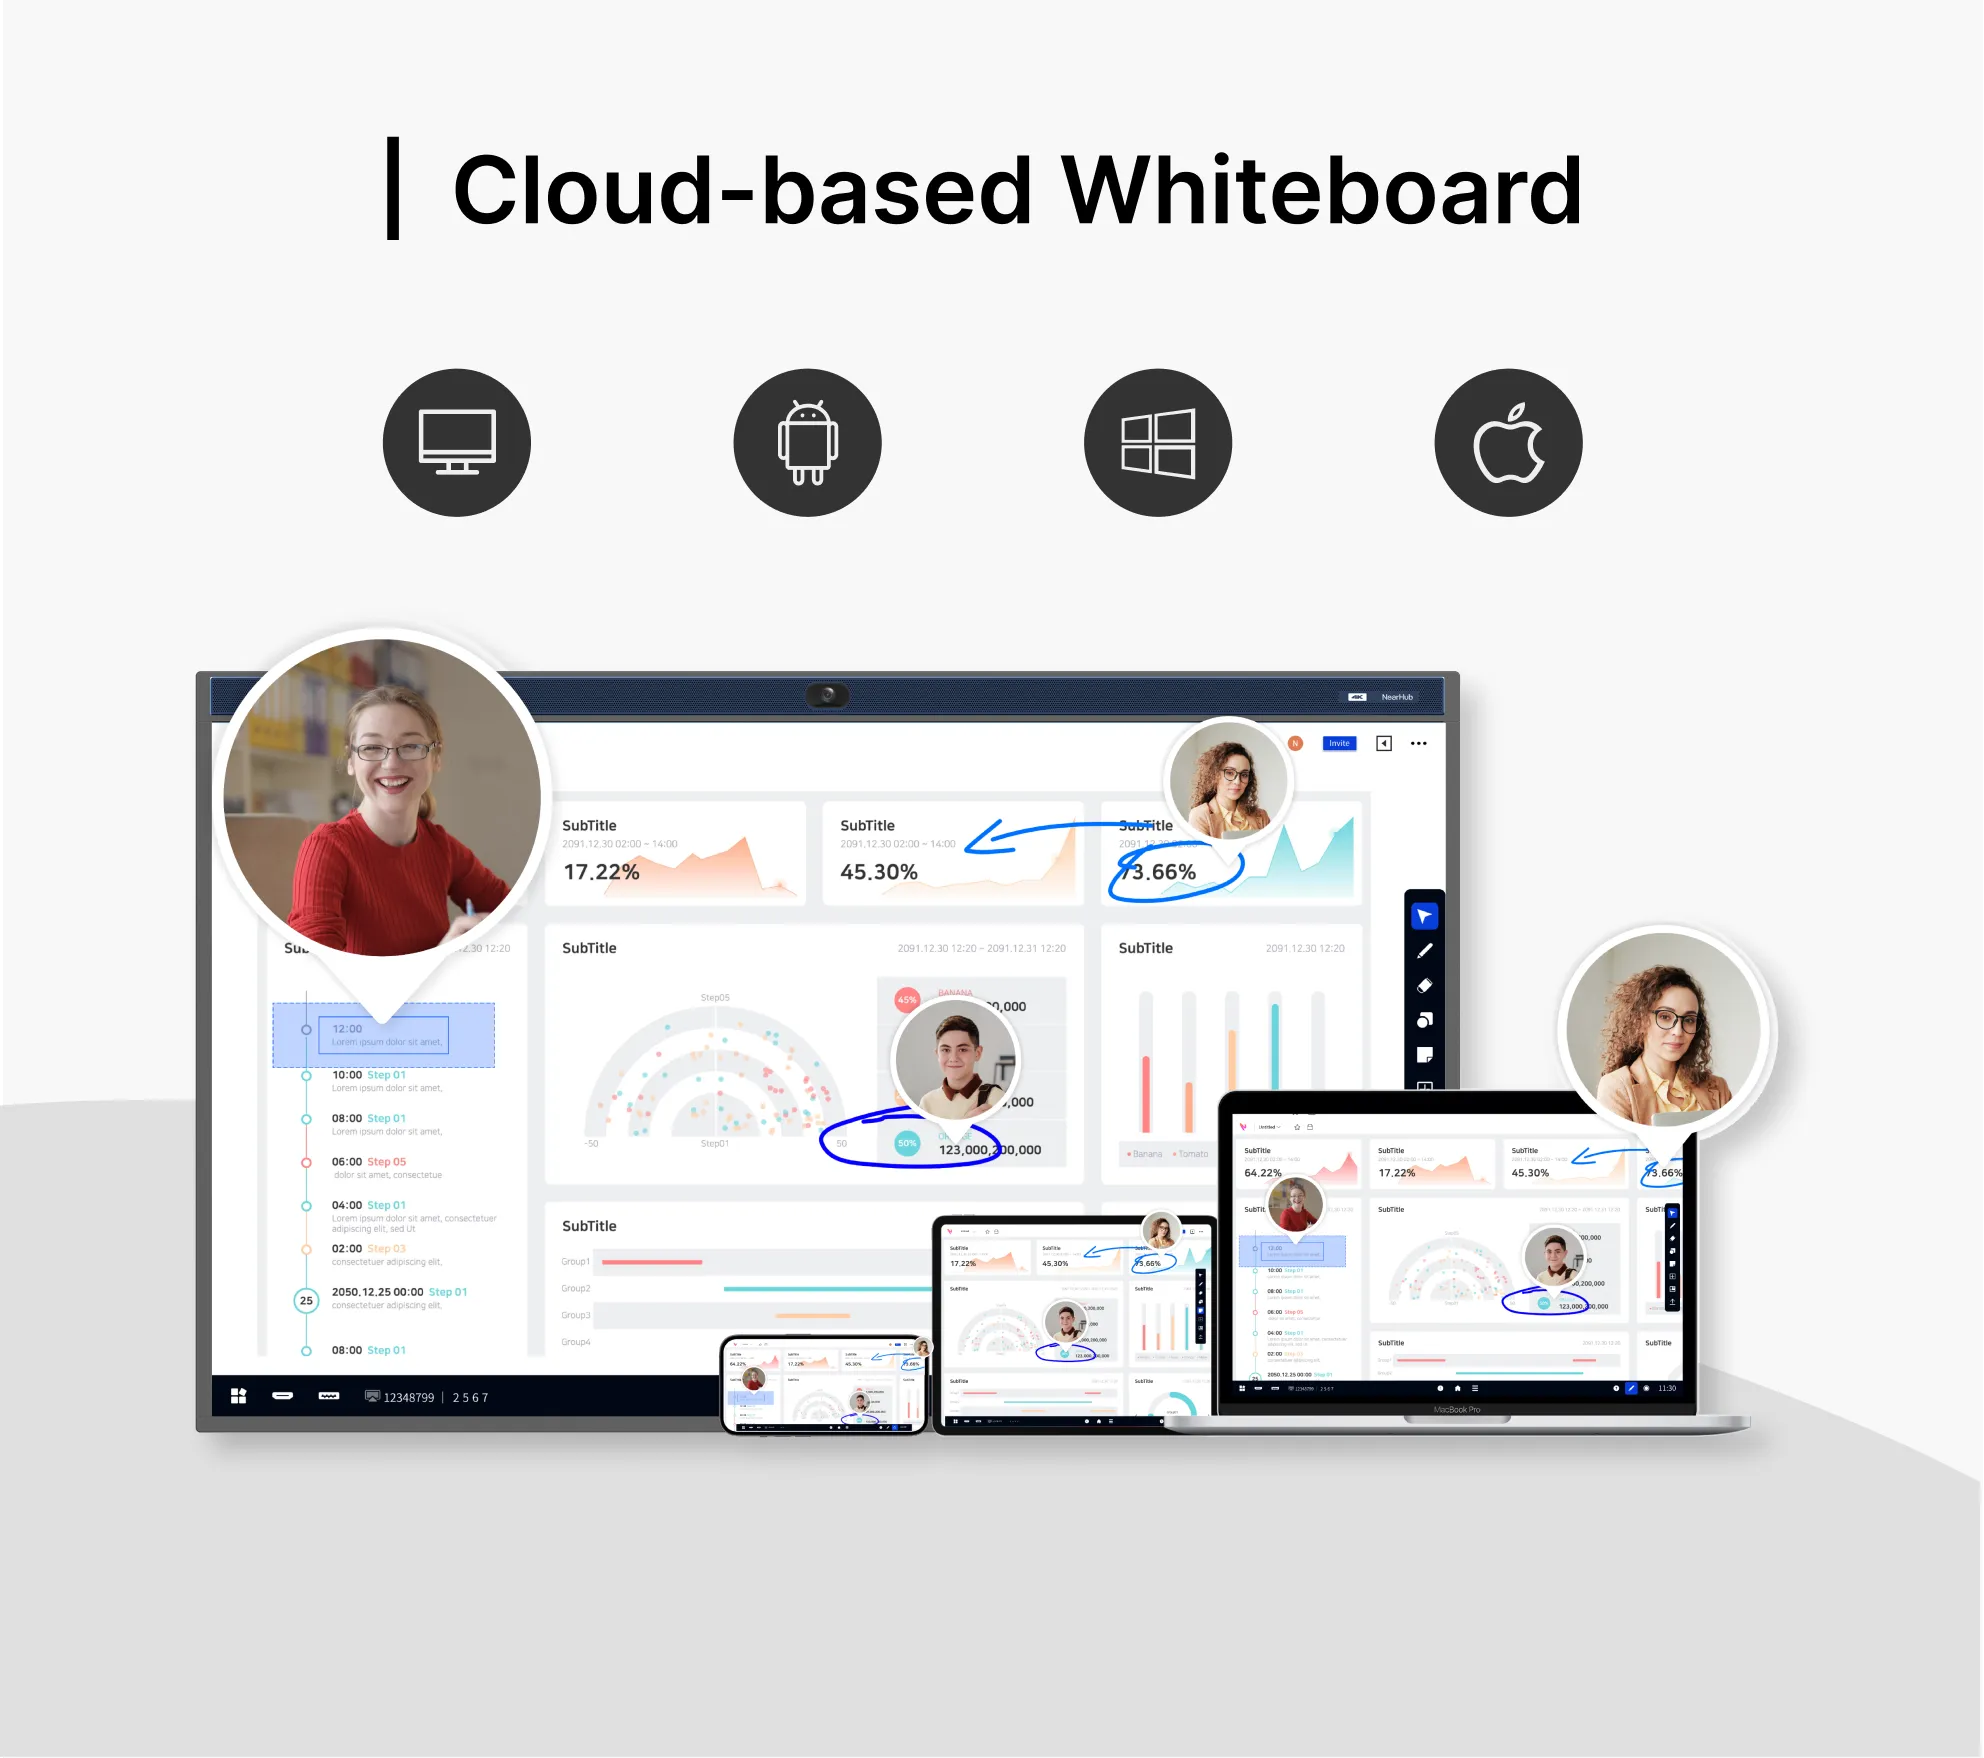 Cloud-based Whiteboard